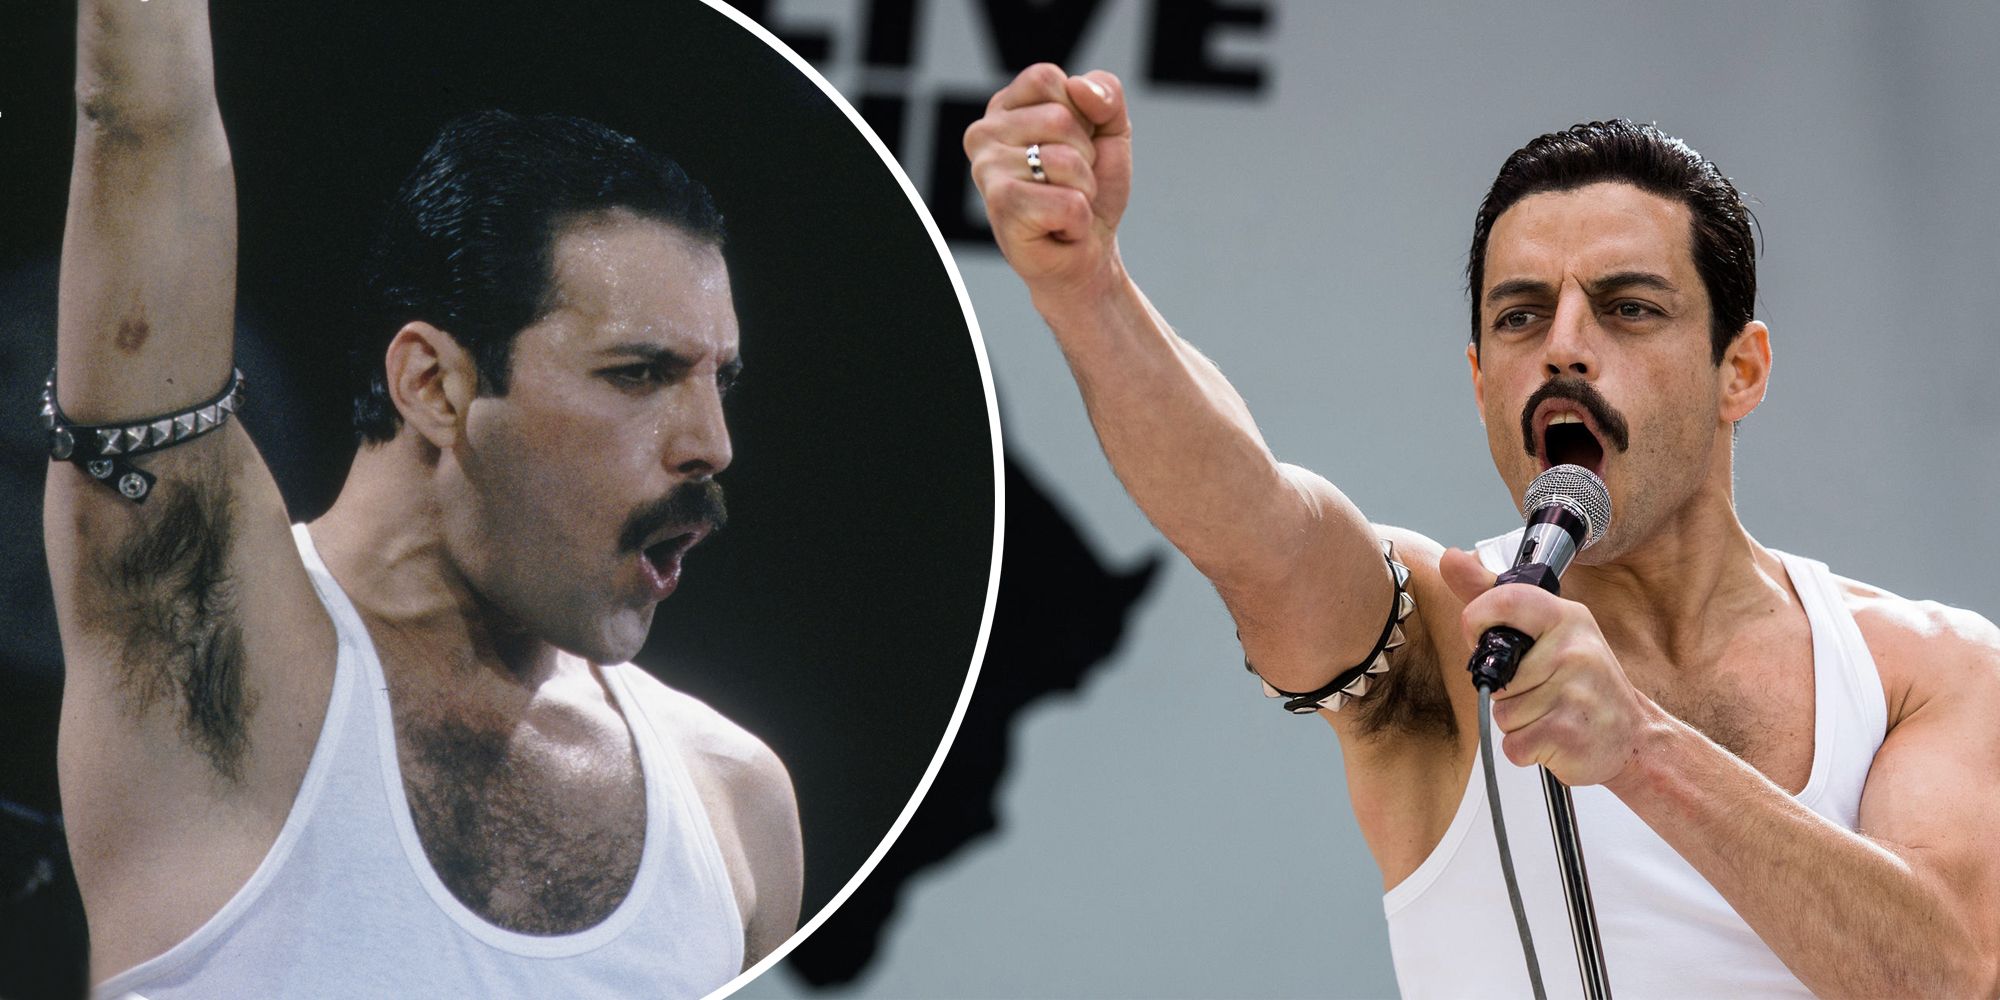 vamos a hacerlo declarar vacante La sincronización entre Freddie Mercury y Rami Malek - Bohemian Rhapsody